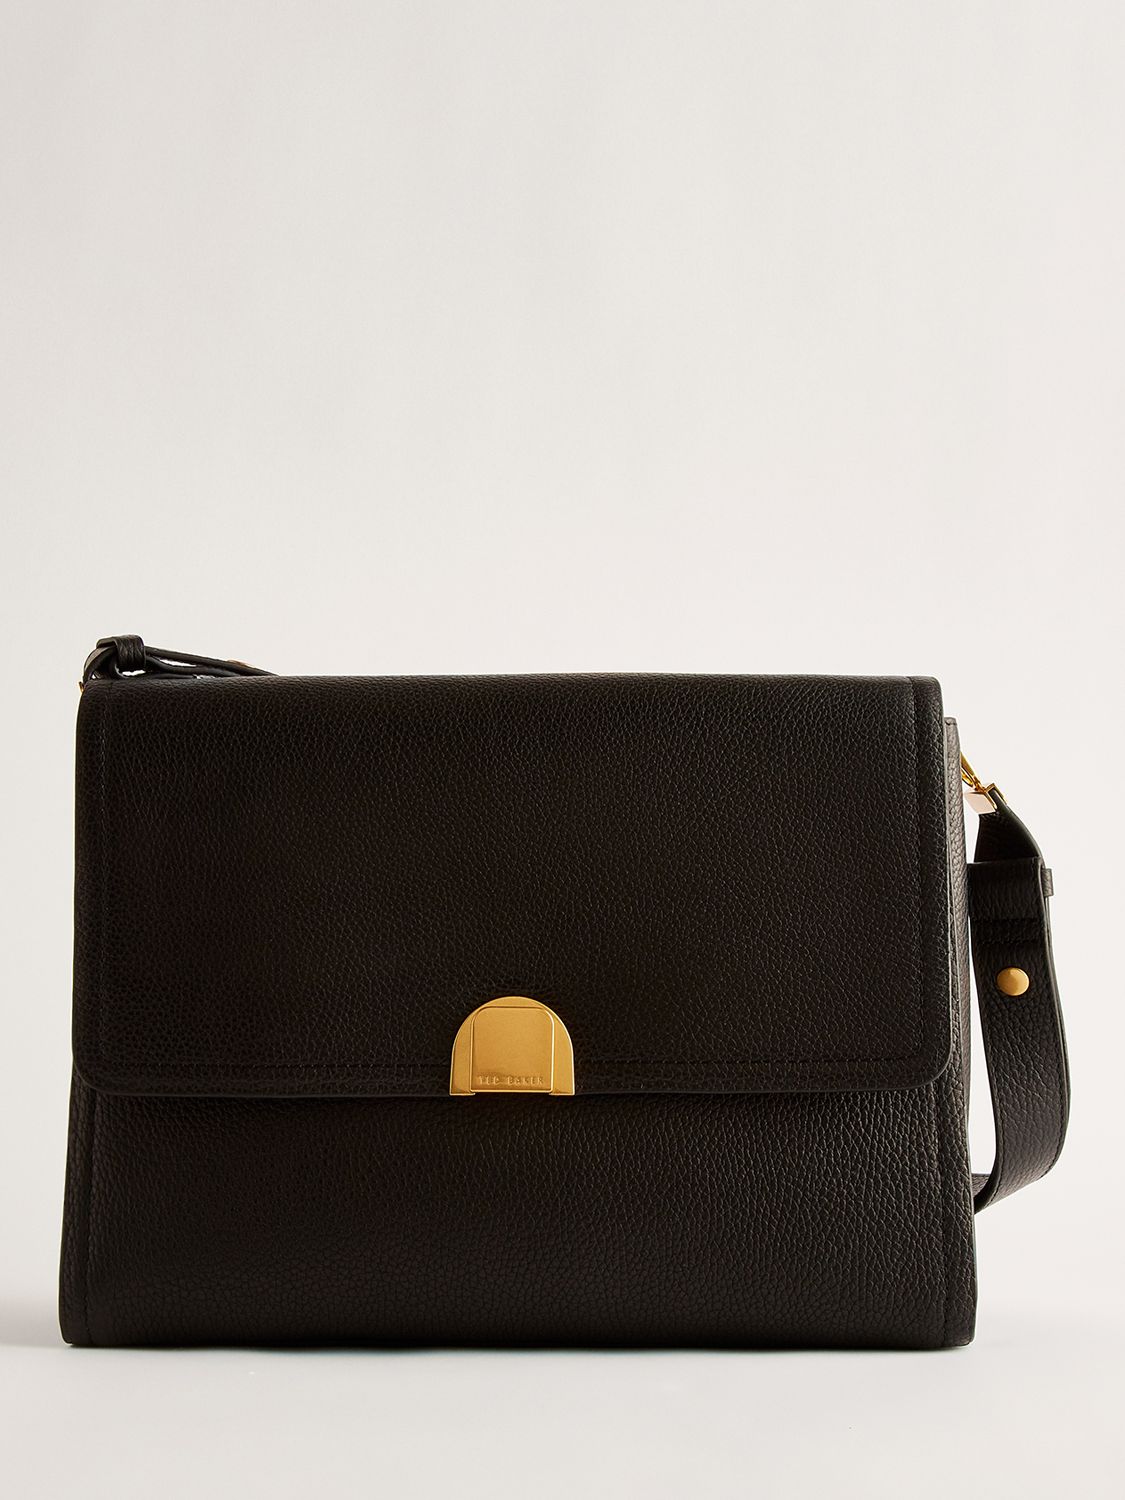 Ted Baker Imilily Lock Detail Large Leather Shoulder Bag, Black, One Size